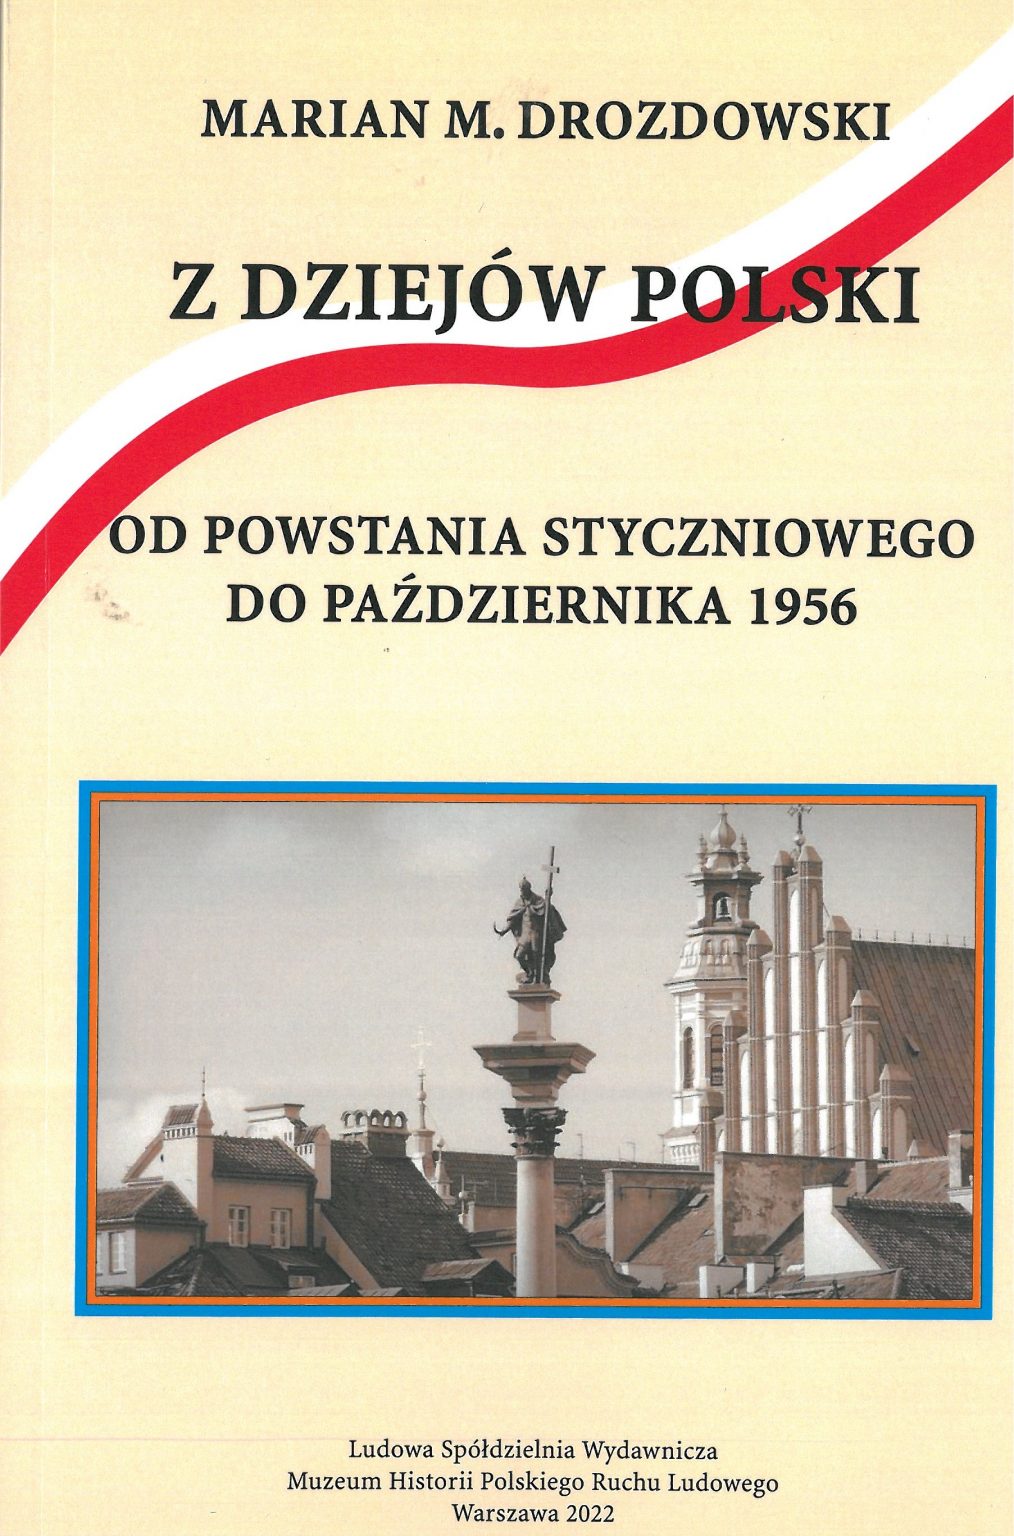 Z dziejów Polski Od Powstania Styczniowego do Października 1956 (M.M.Drozdowski)